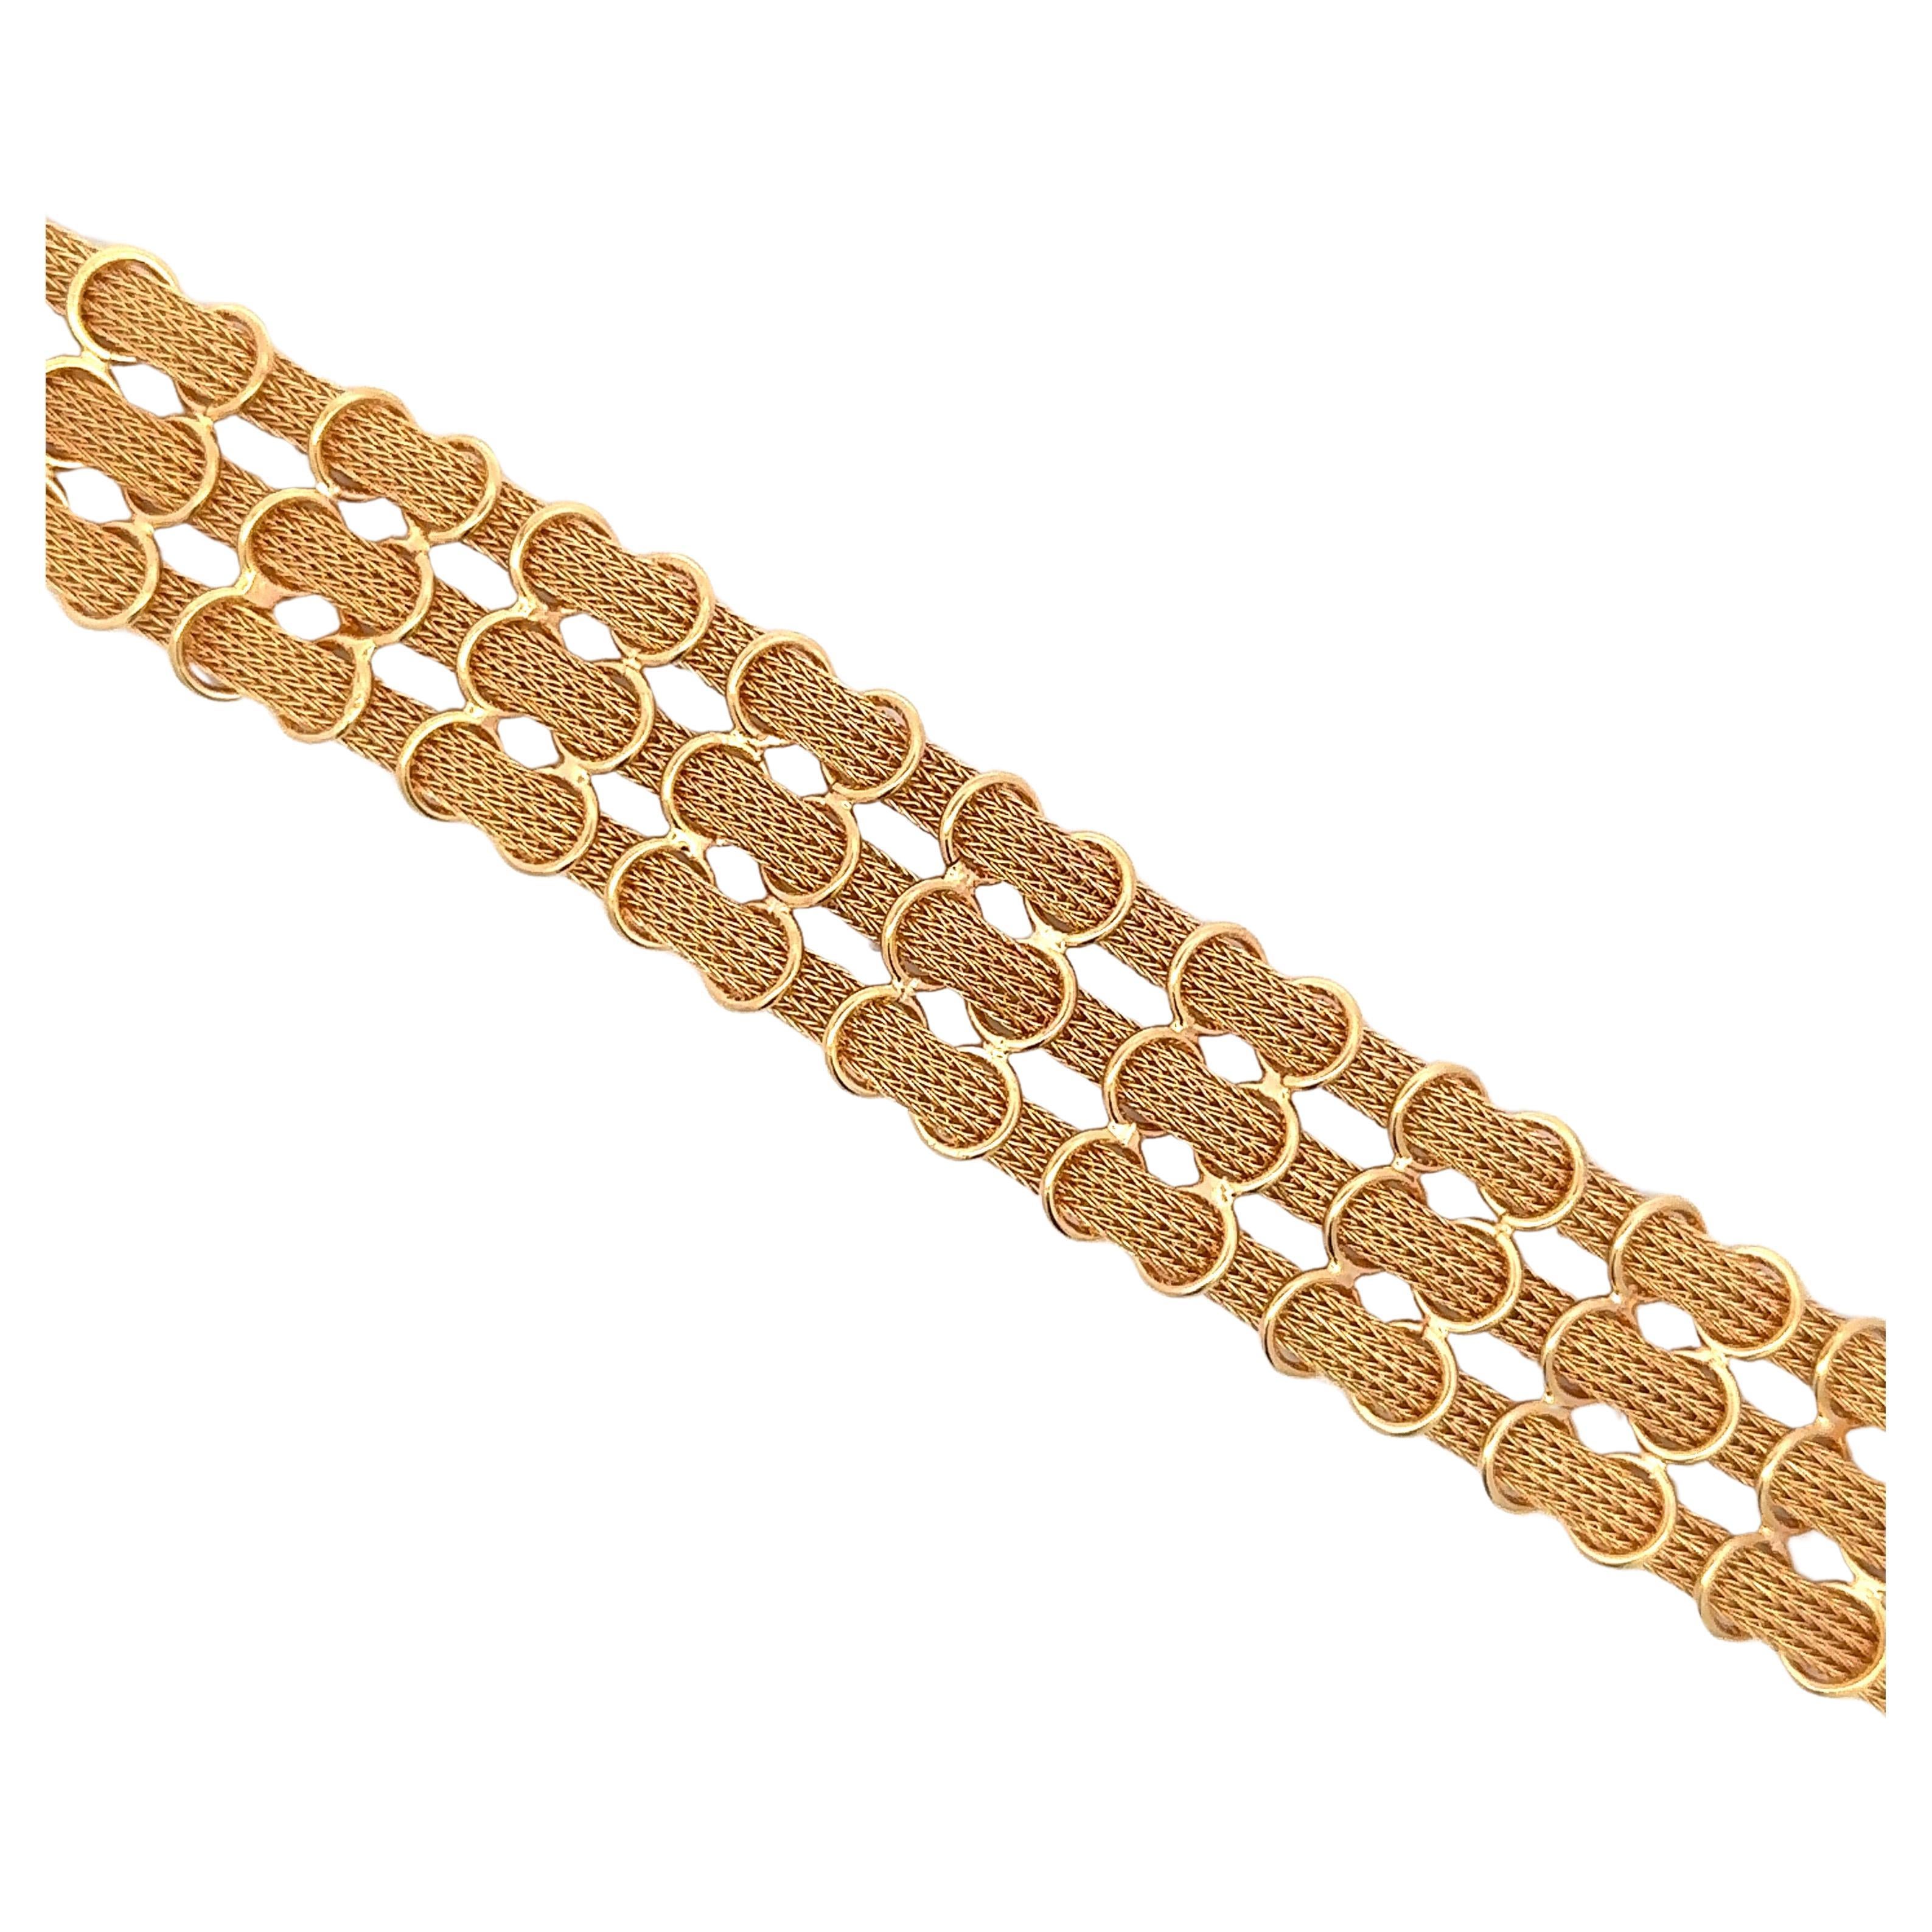 Dreireihiges gewebtes Netzmotiv-Armband mit Motiv 41.2 Gramm 18 Karat Gelbgold